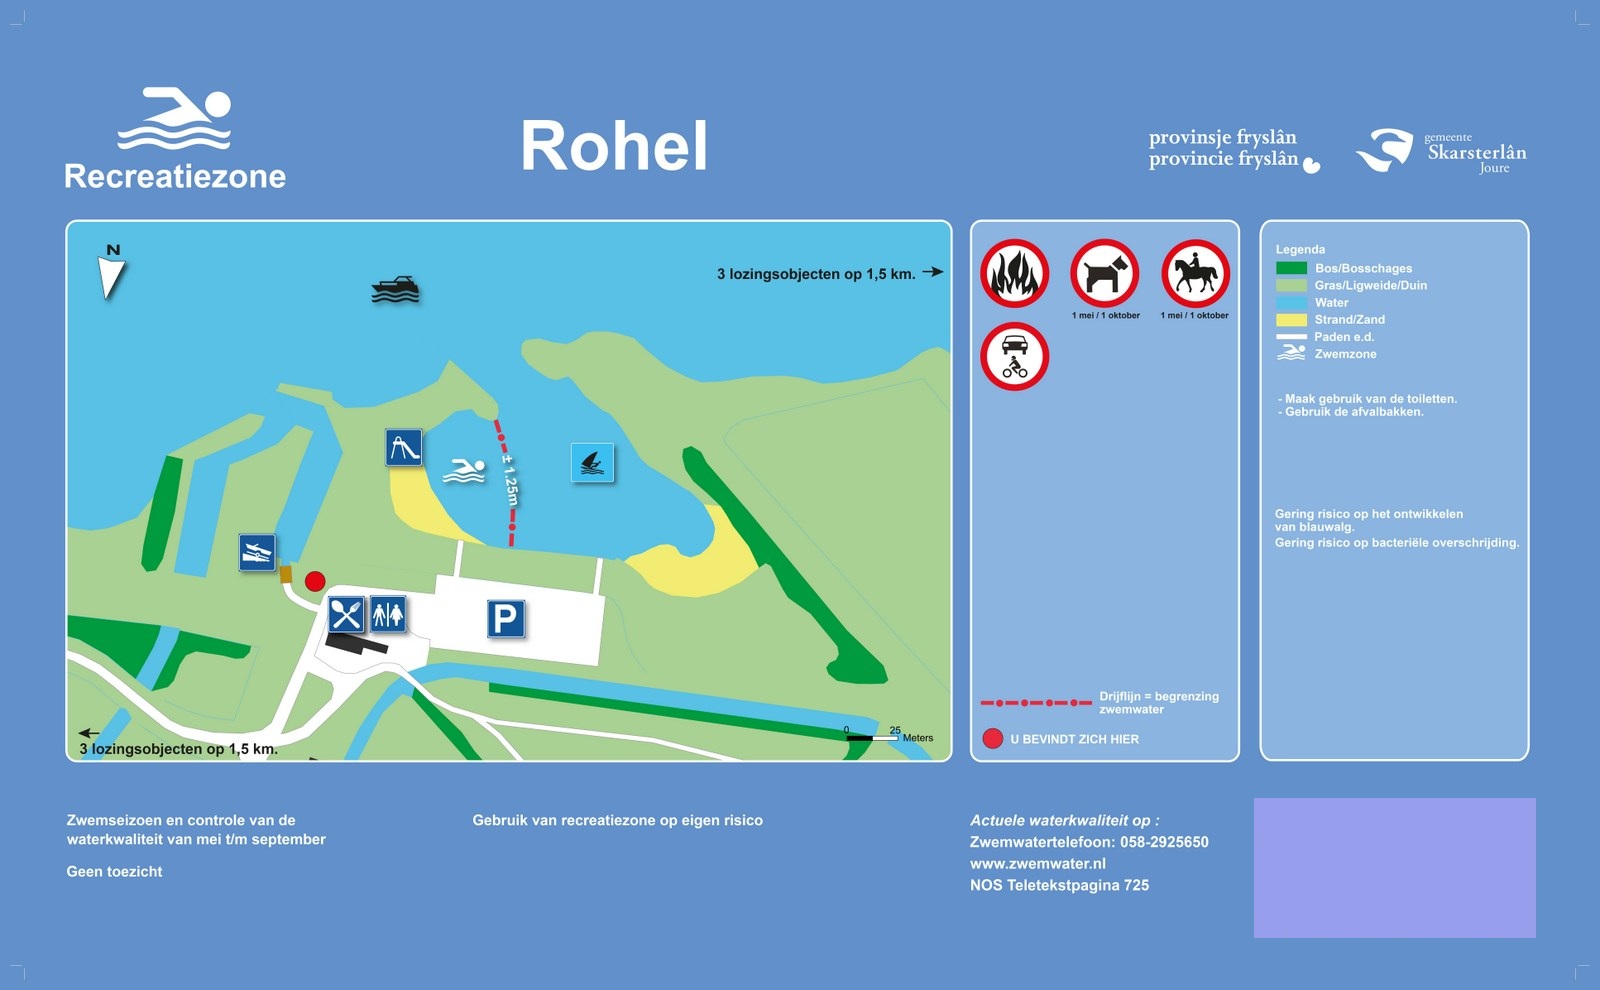 Het informatiebord bij zwemlocatie Rohel